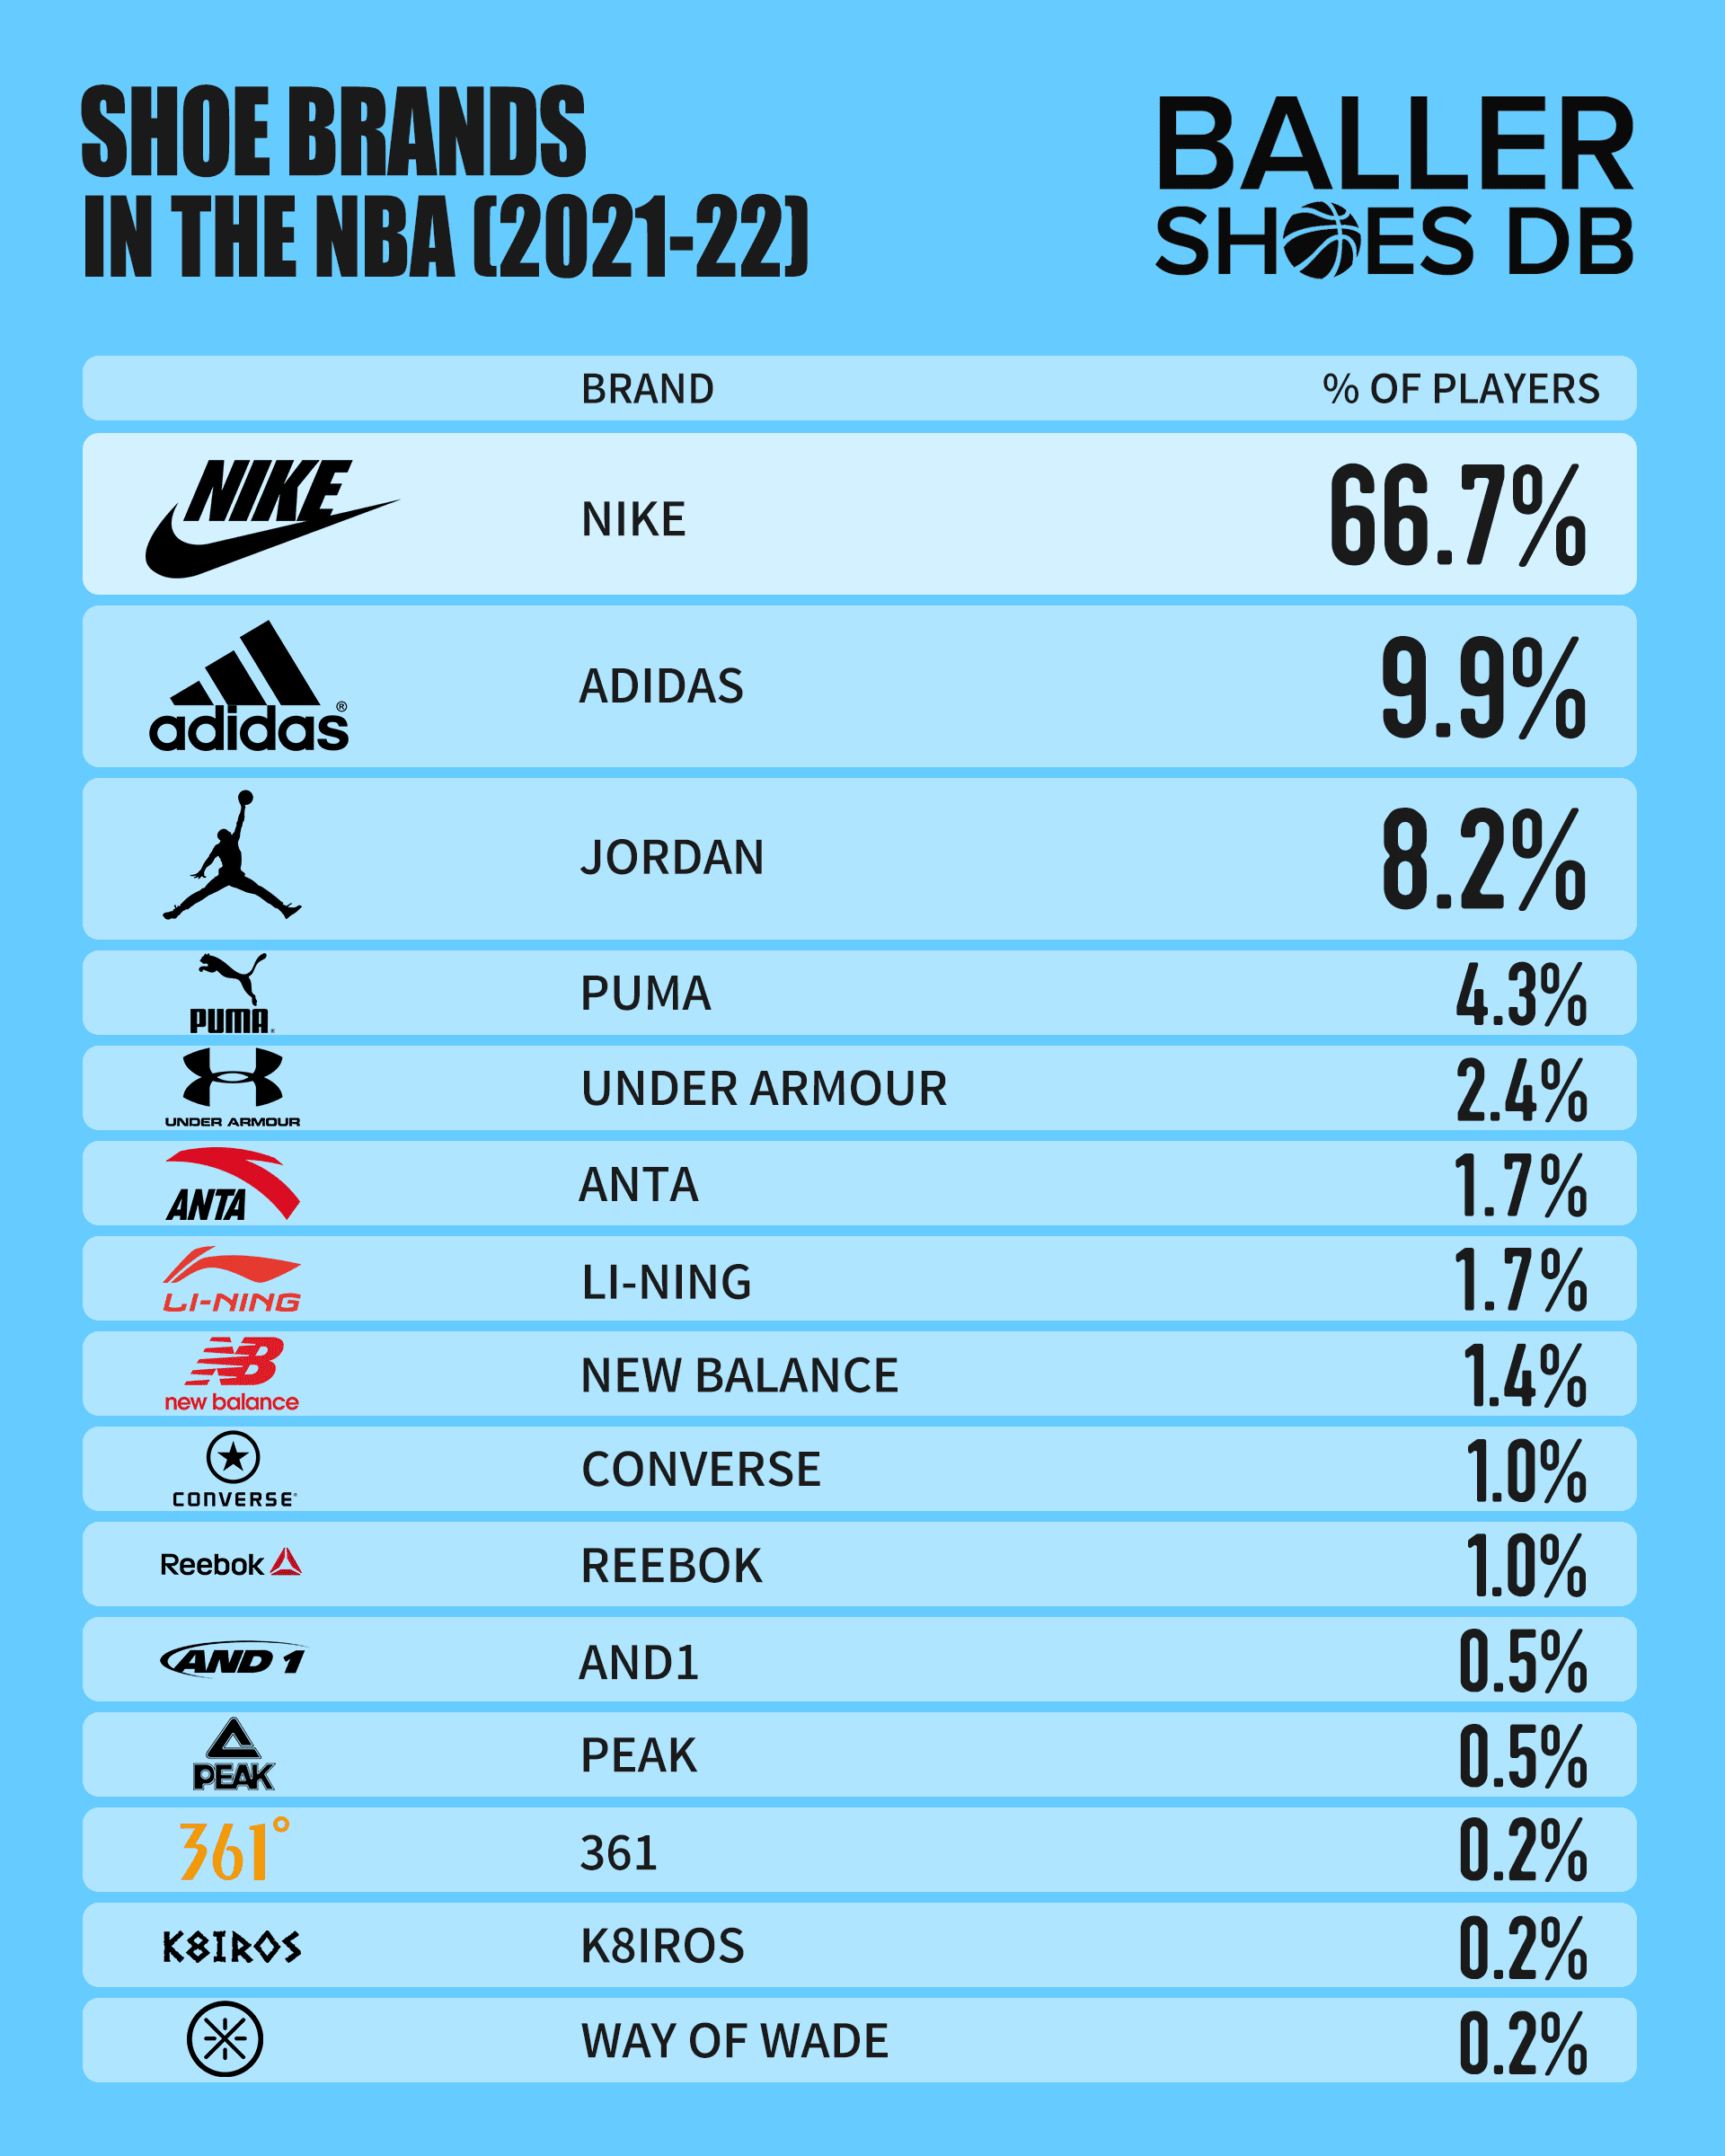 Best Men's Shoe Brands 2023 - 15 Top Shoe Brands Every Man Should Own